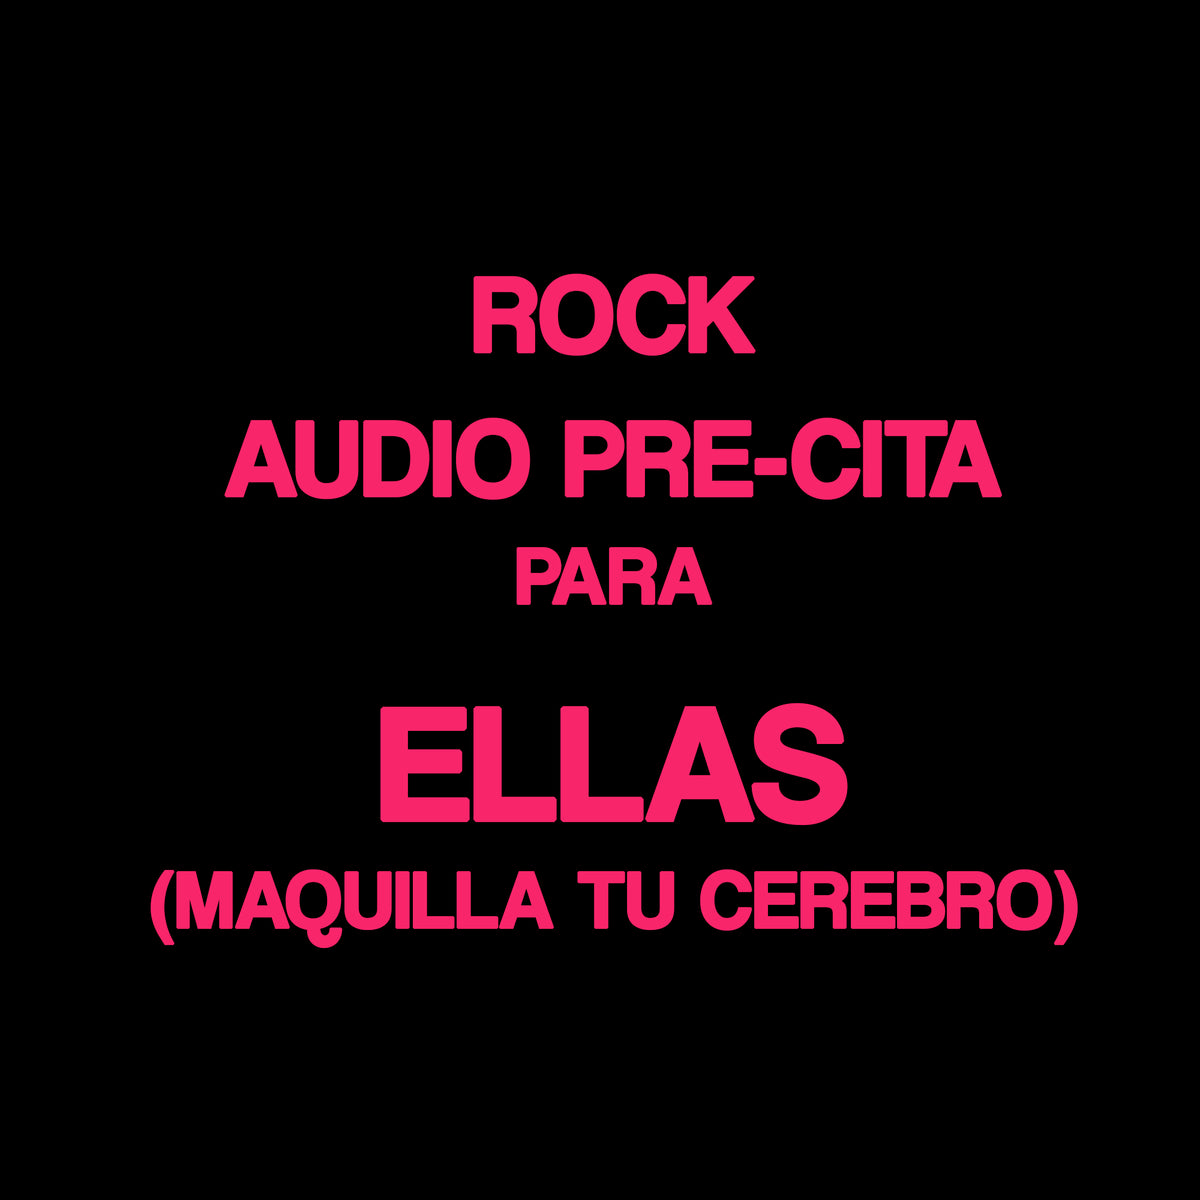 Rock - Audio pre cita para ellas MAQUILLA TU CEREBRO